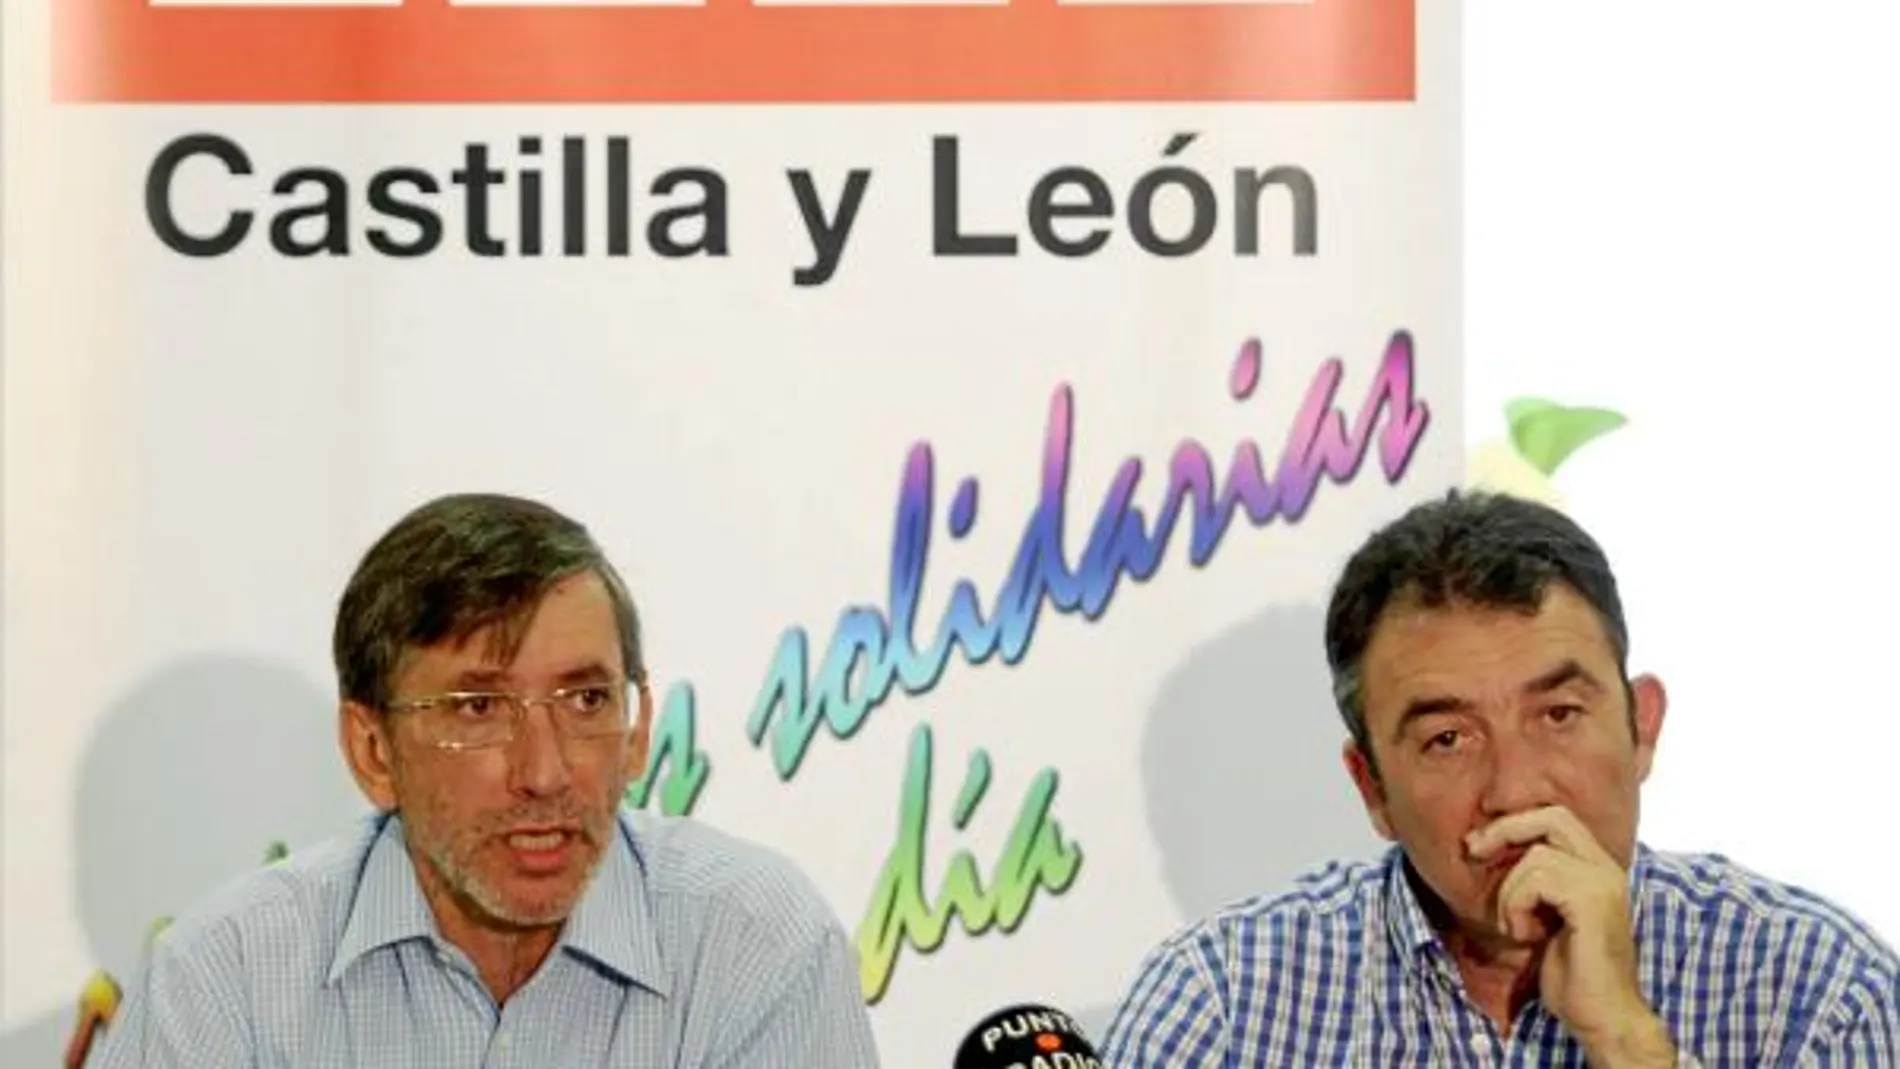 Fernando Puig-Samper y Ángel Hernández explican las razones de la convocatoria de la huelga general